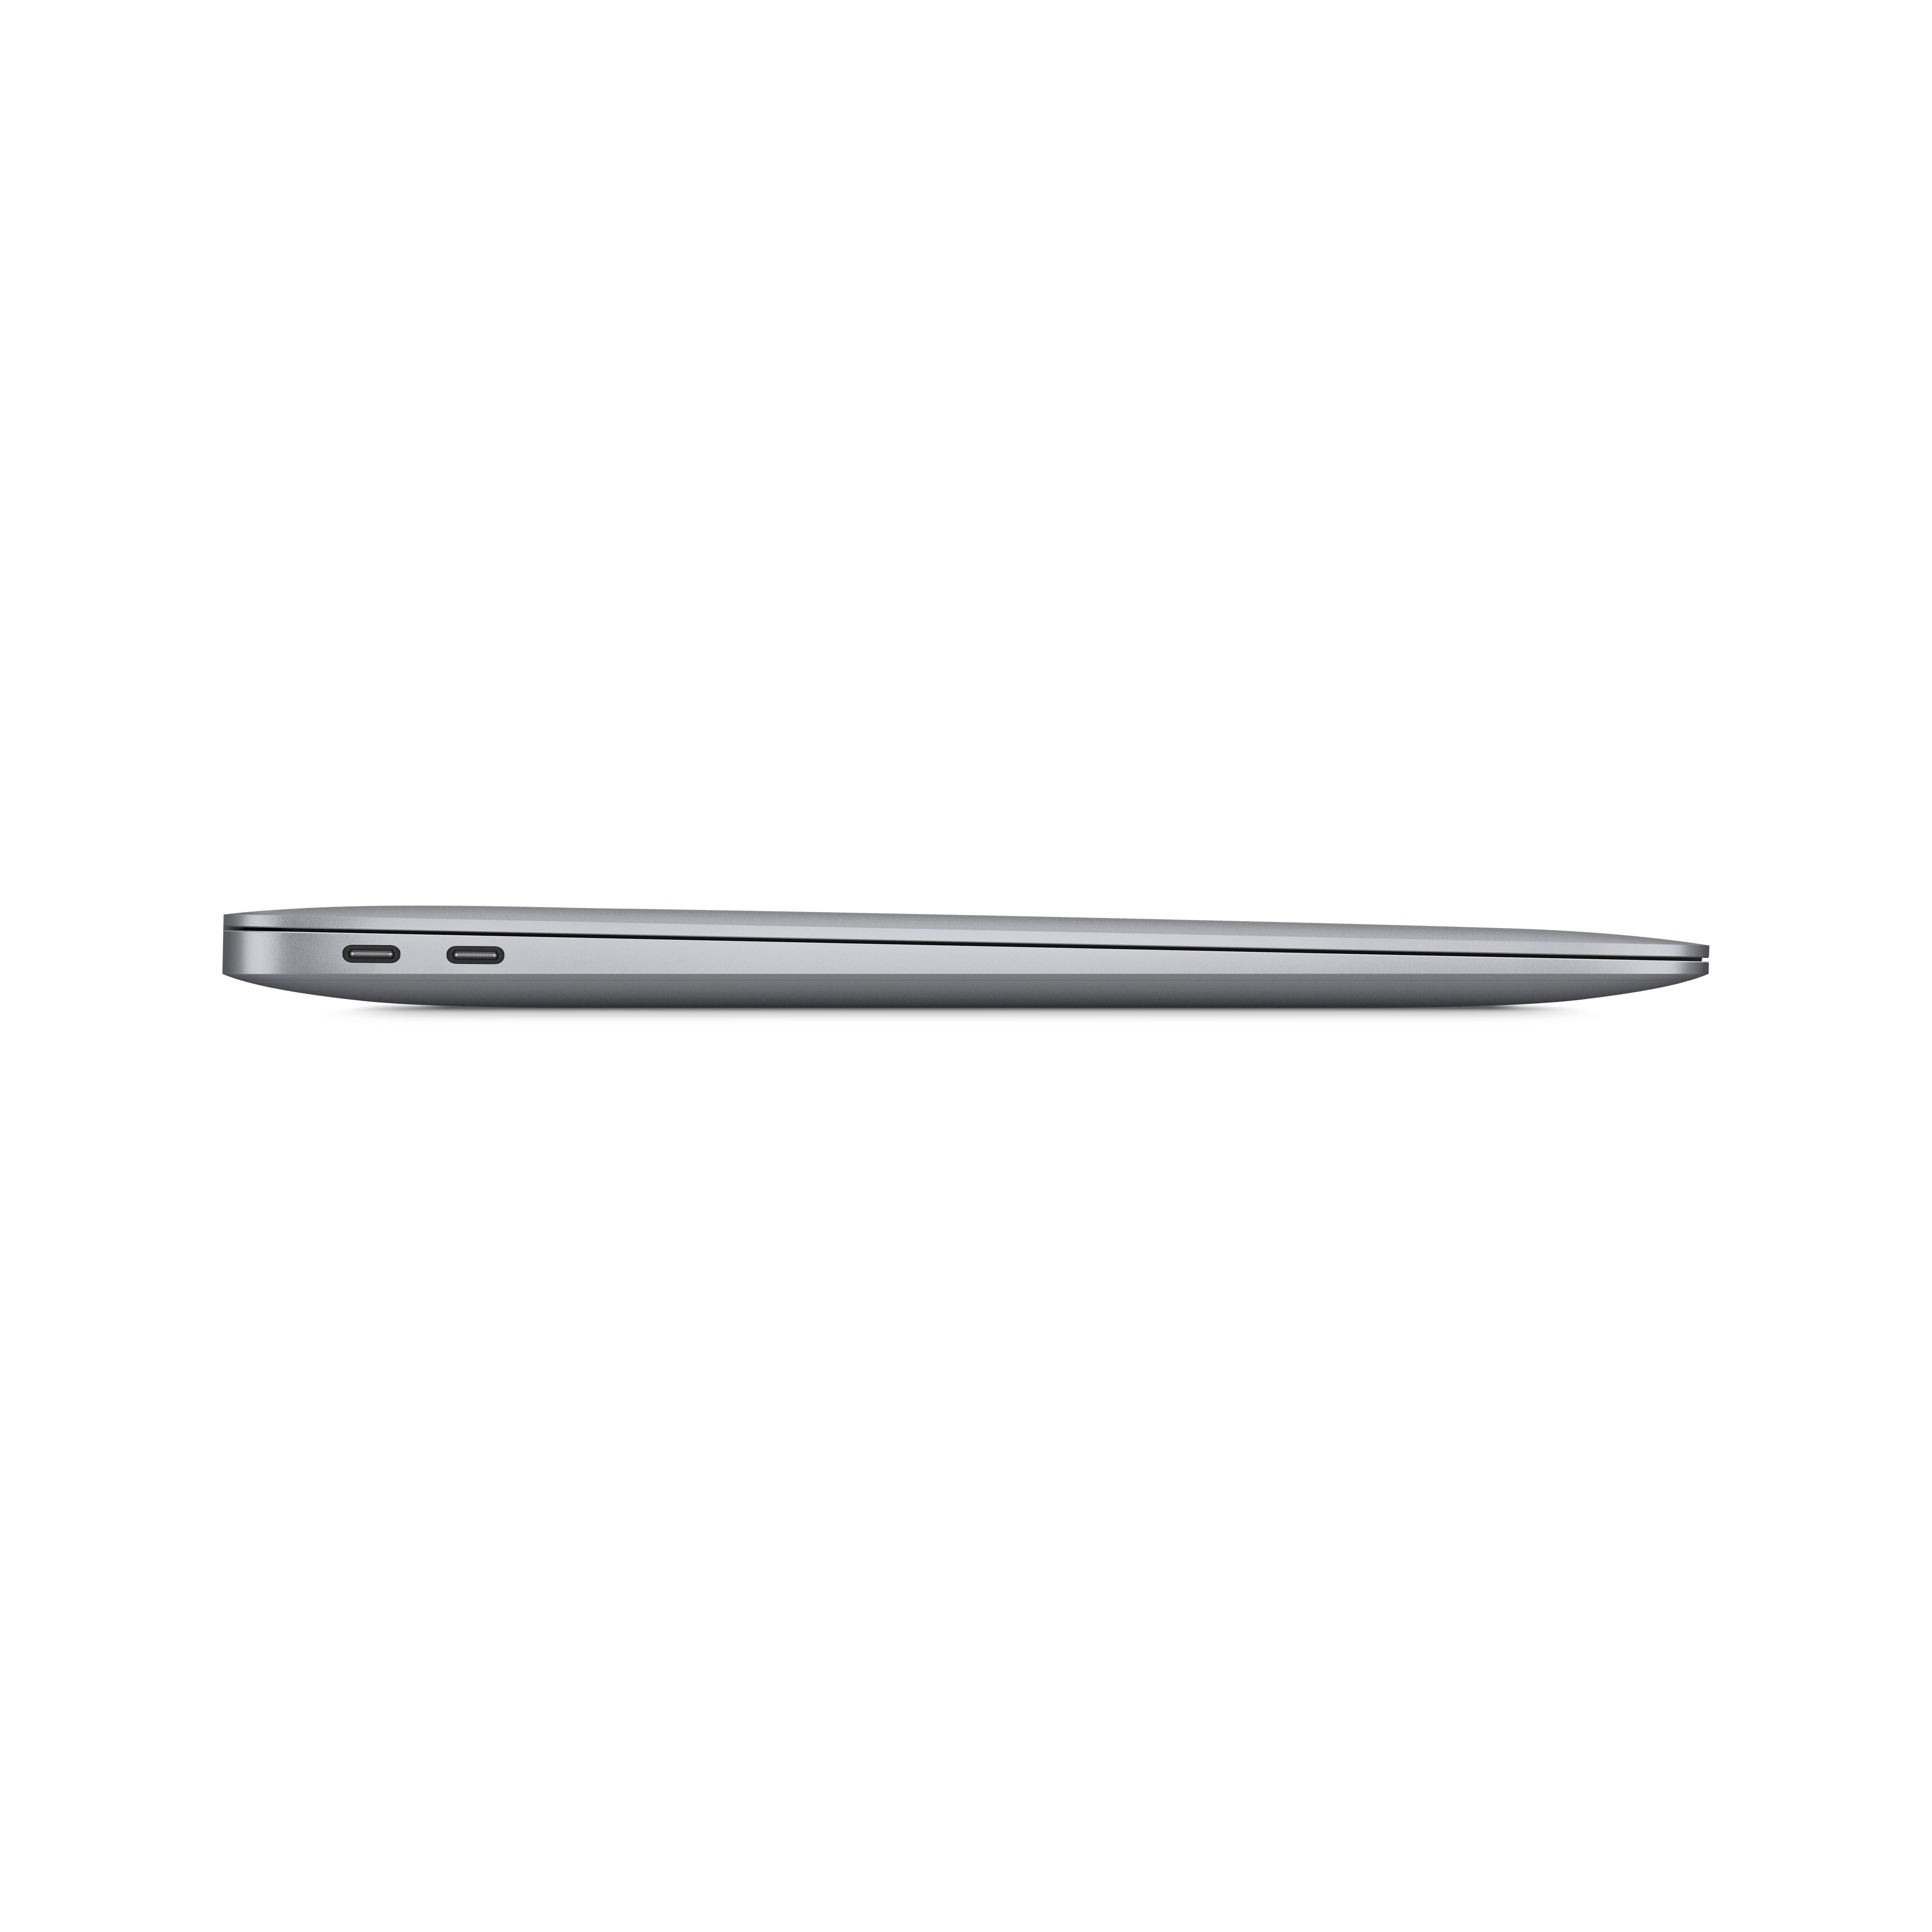 13-inch Macbook Air M1 - New Gauge Digital